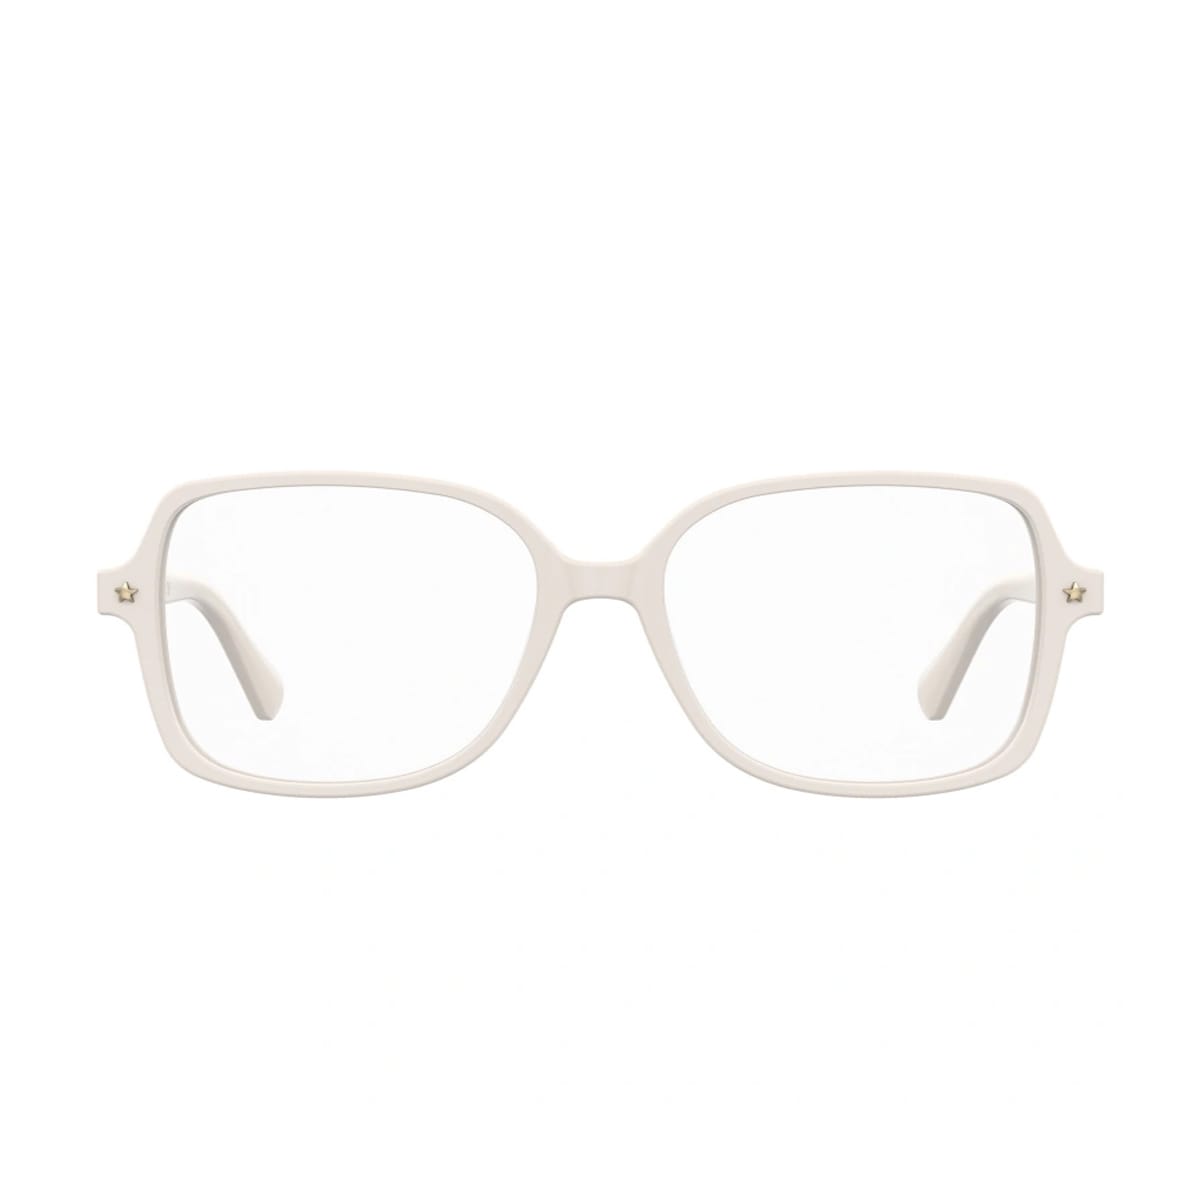 Cf 1026 Vk6/16 White Glasses